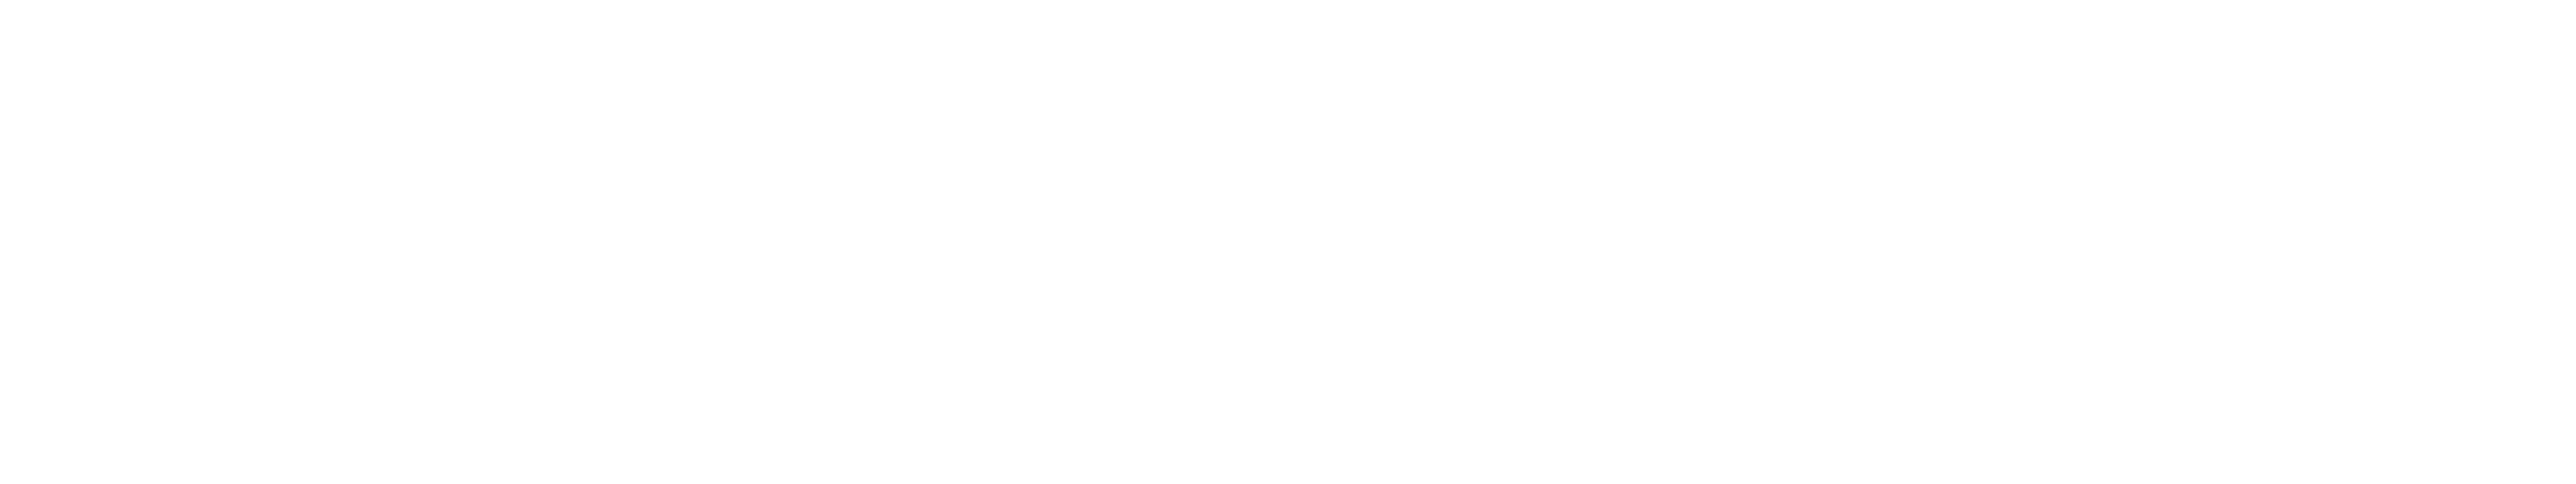 Himmelator (TM) logo